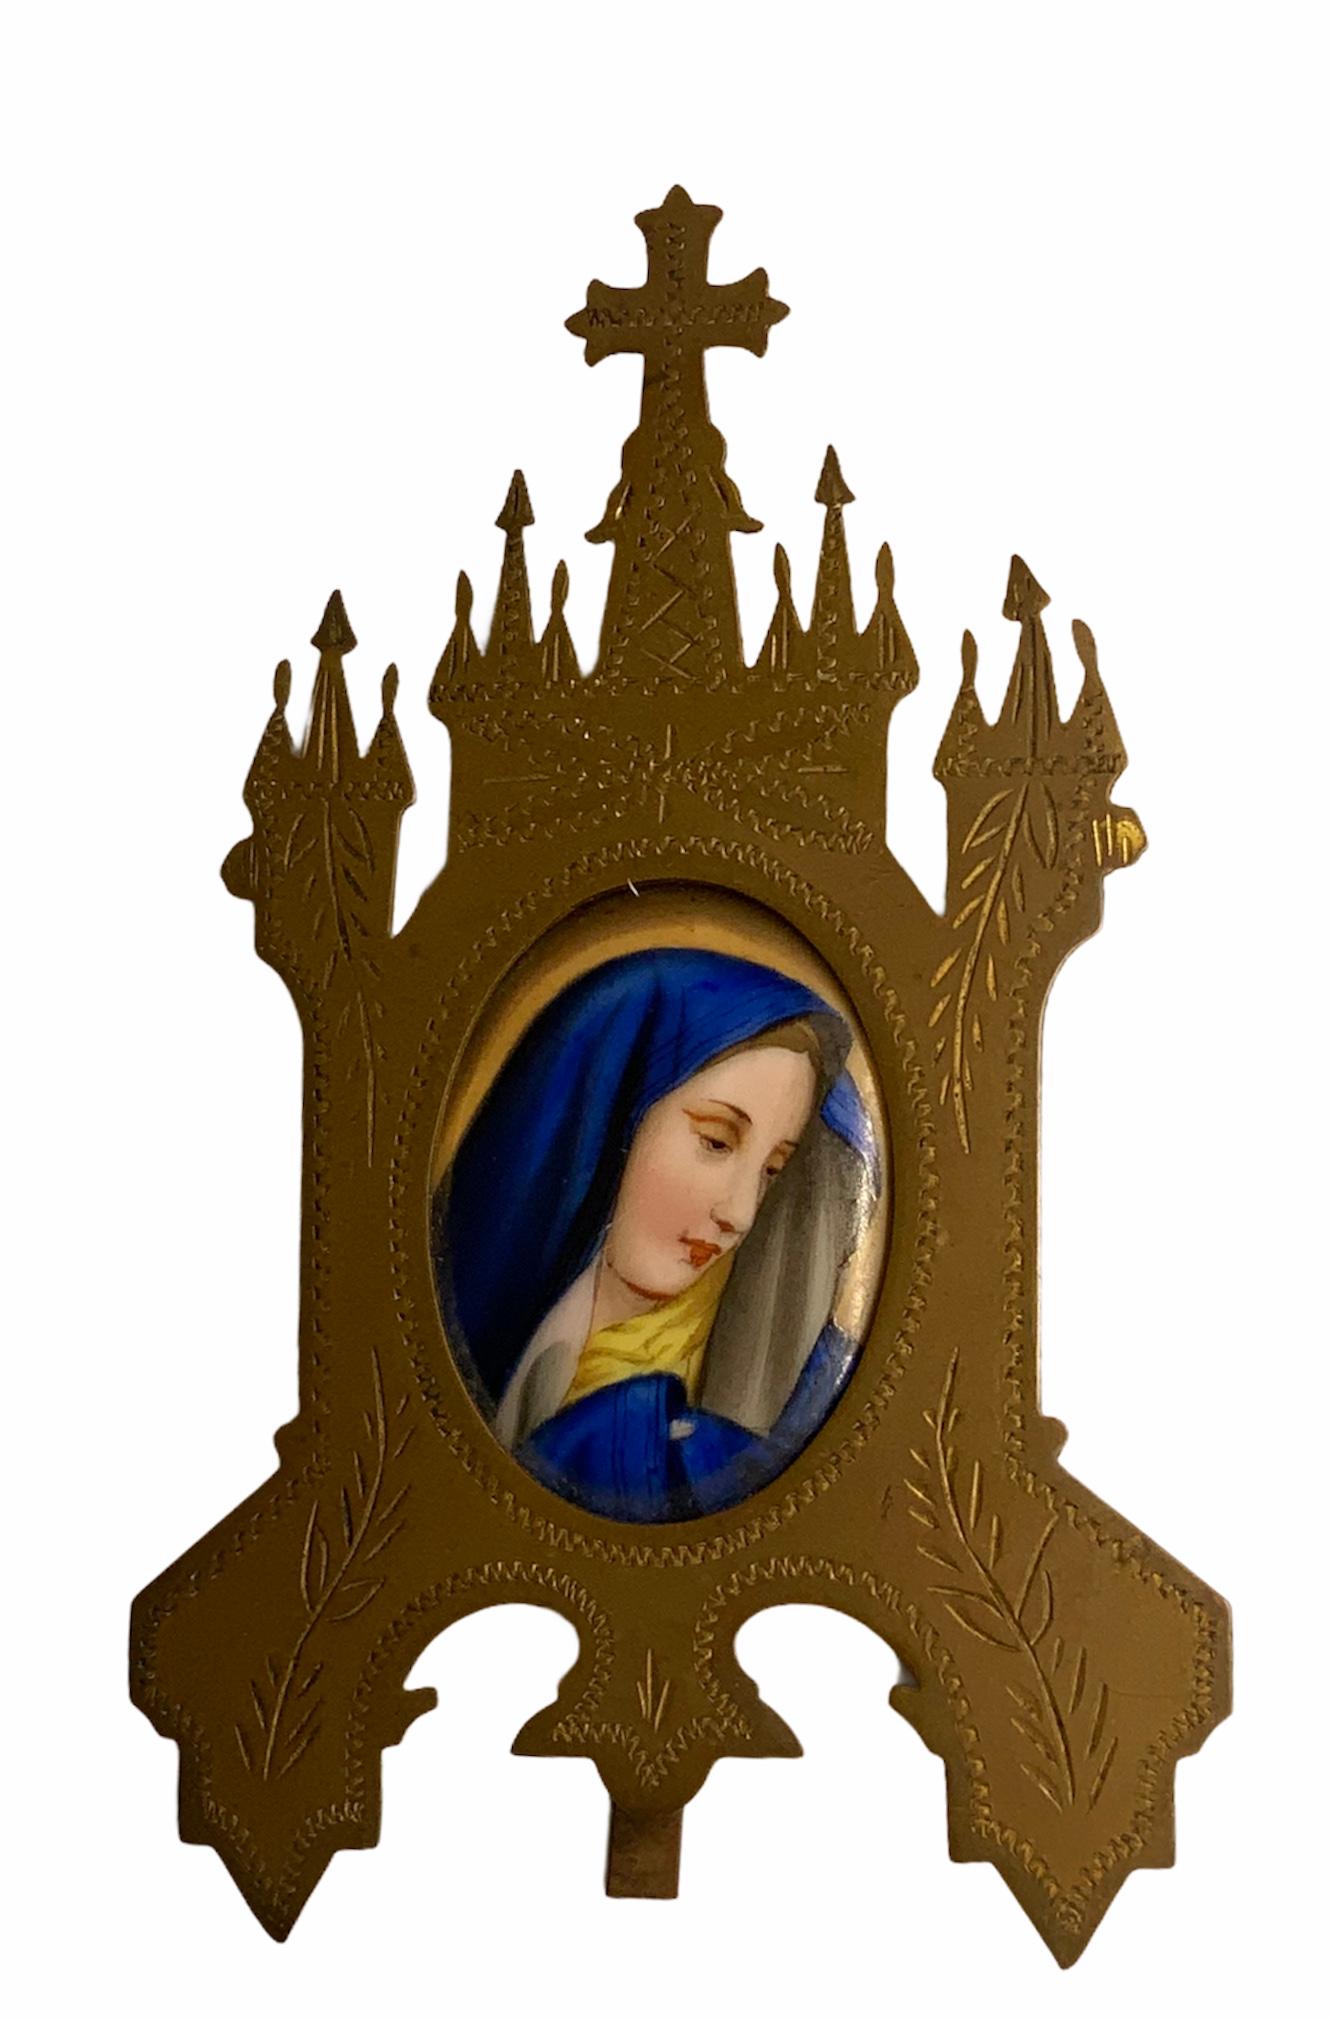 Dies ist ein handbemaltes Porzellan oval Porträt Plakette der Jungfrau Maria für zu Hause Andacht. Es ist in ein goldenes Messingmetall in Form einer gotischen Kirche eingefasst, die als Ständer dient. Das Messing ist mit einigen Schnitzereien von